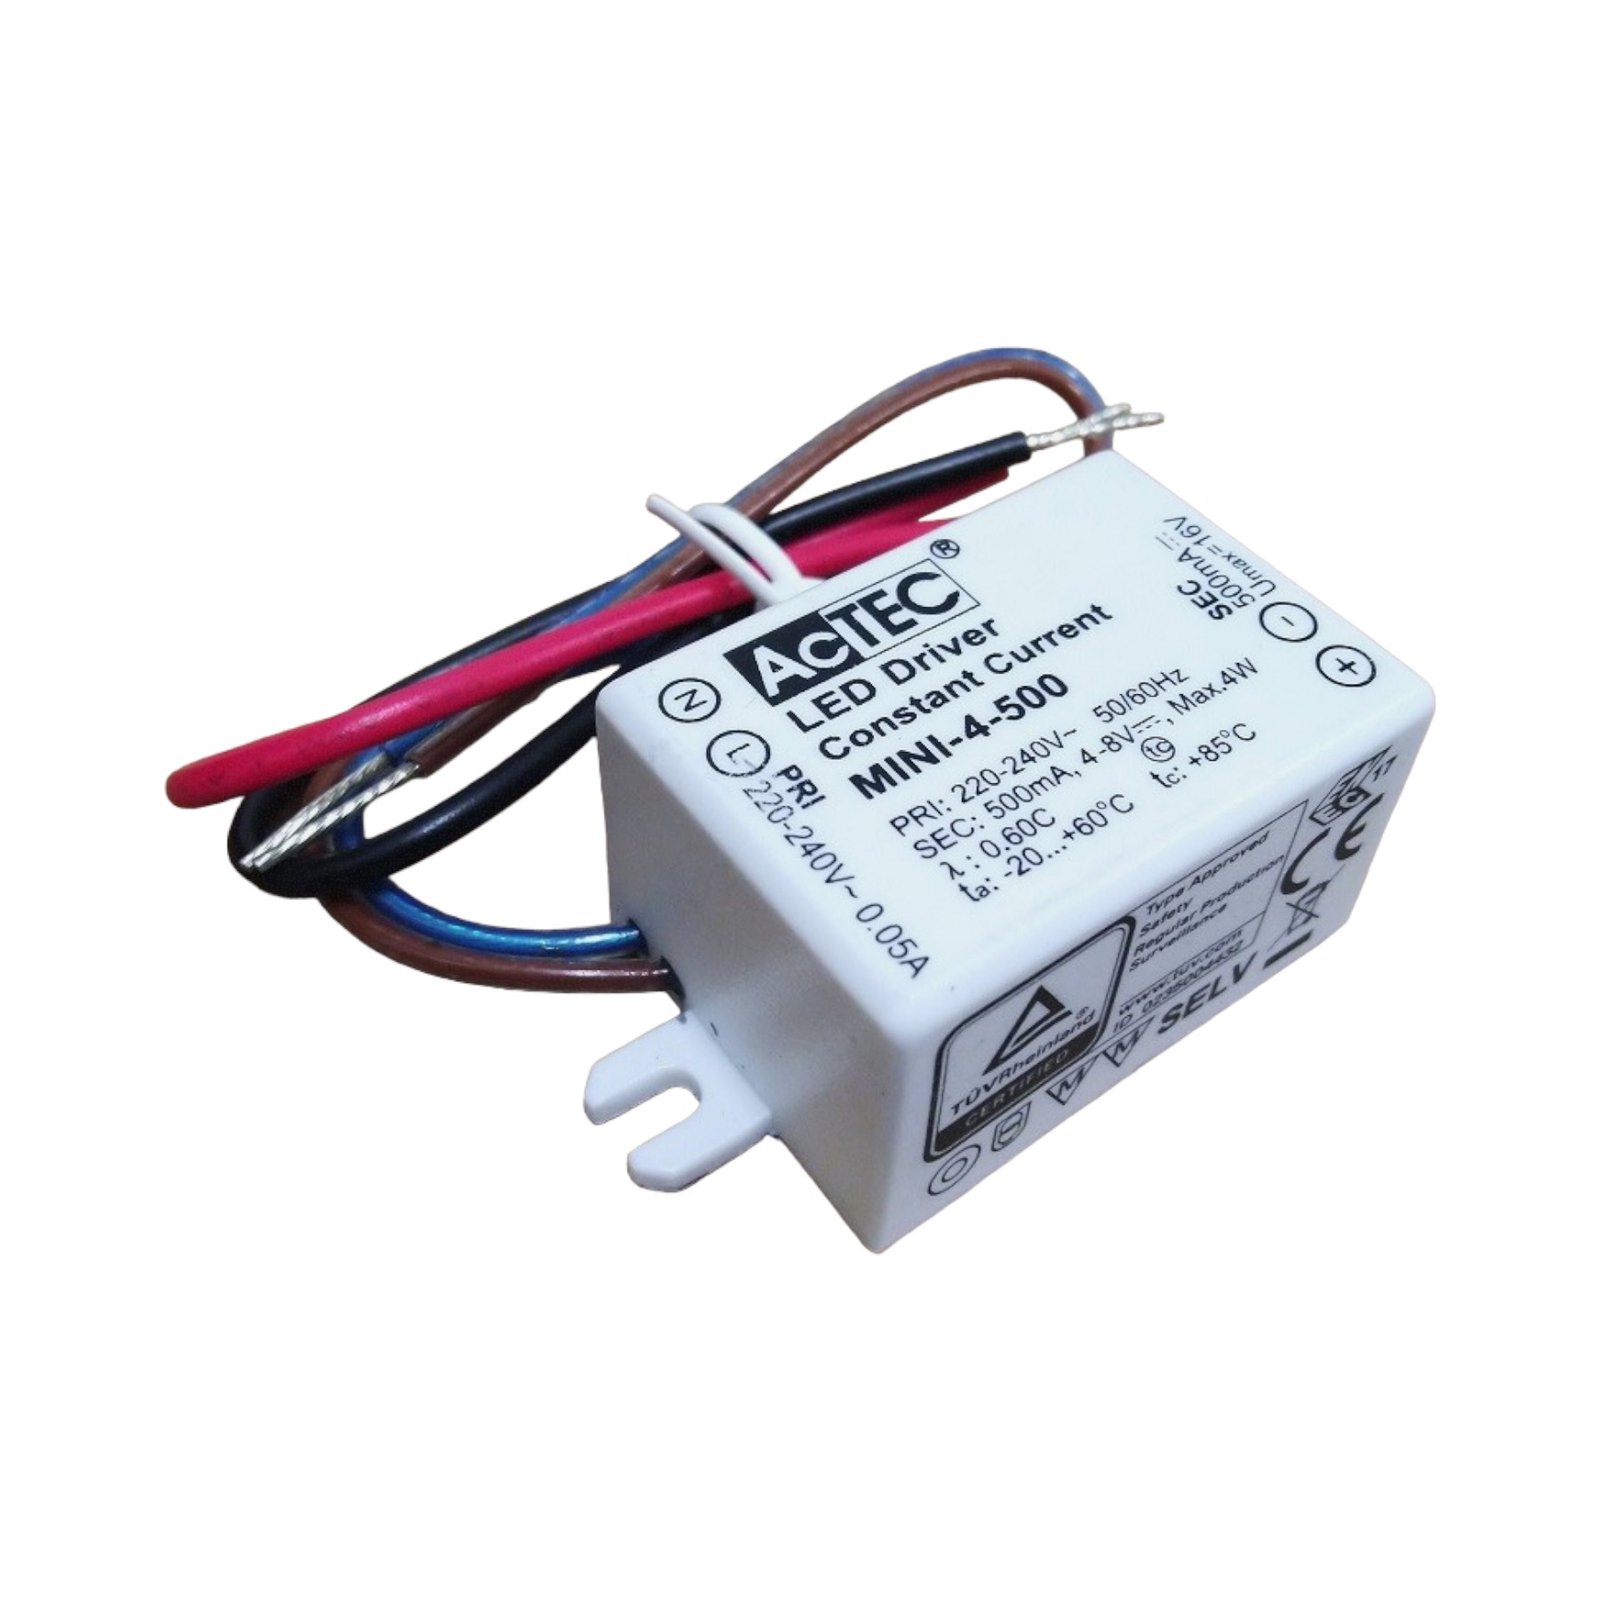 AcTEC Mini transformador LED CC 500mA, 4W, IP65